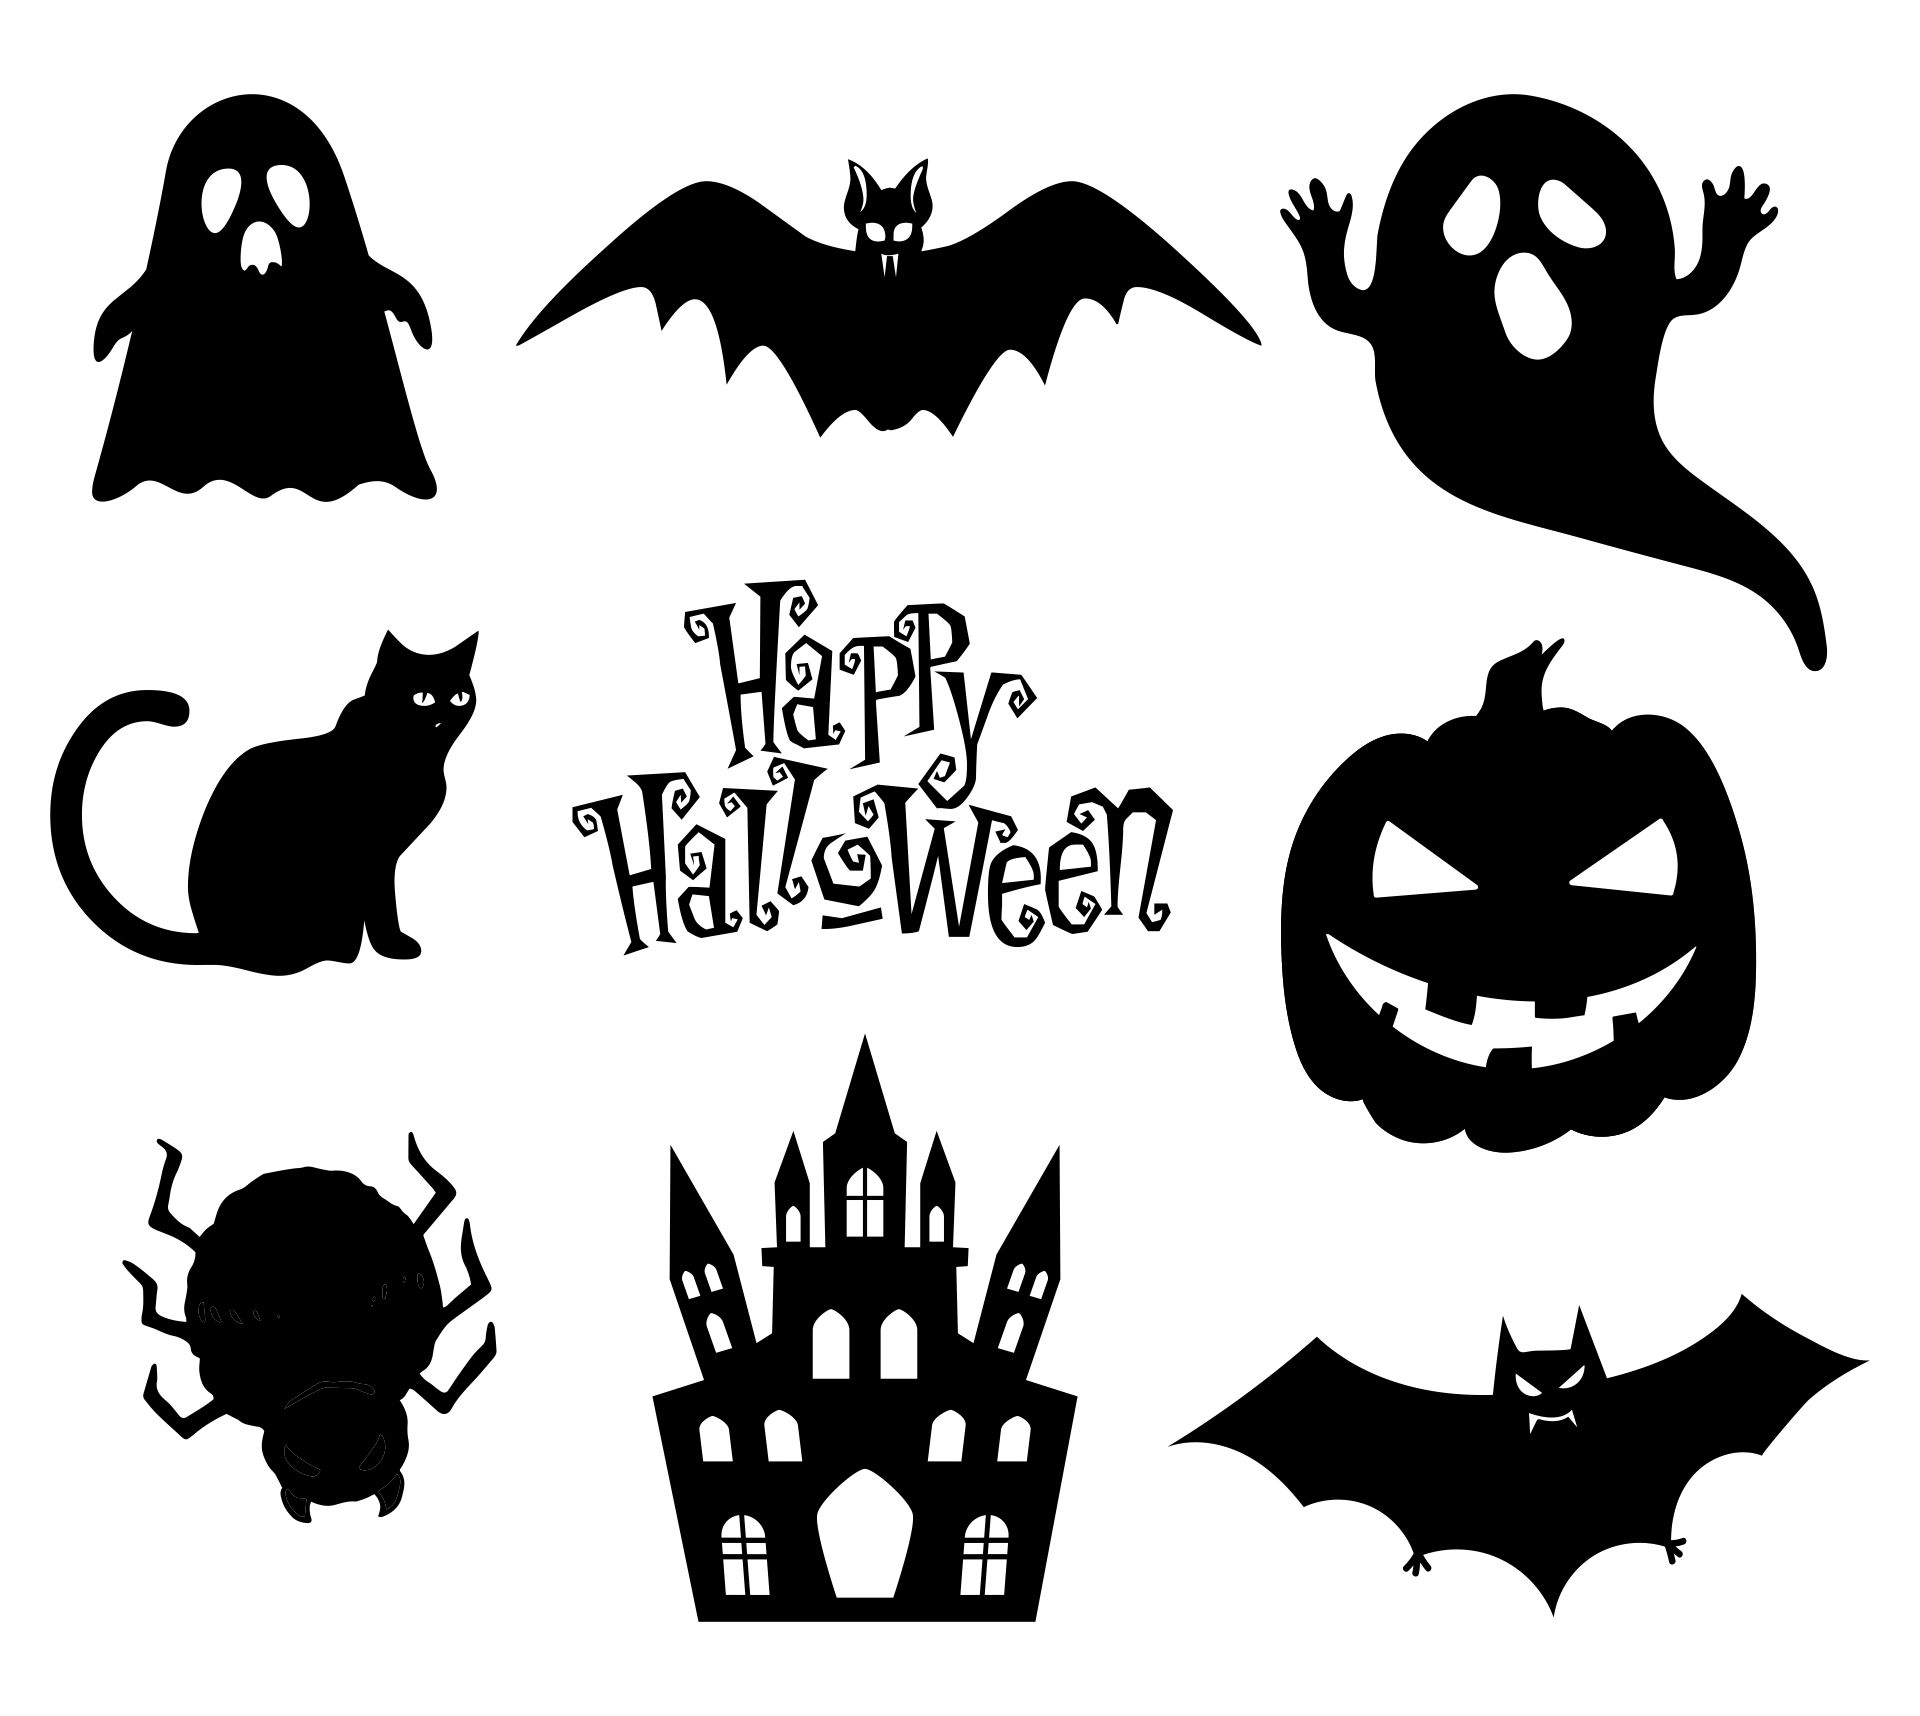 Halloween Printable Silhouettes - Printable World Holiday